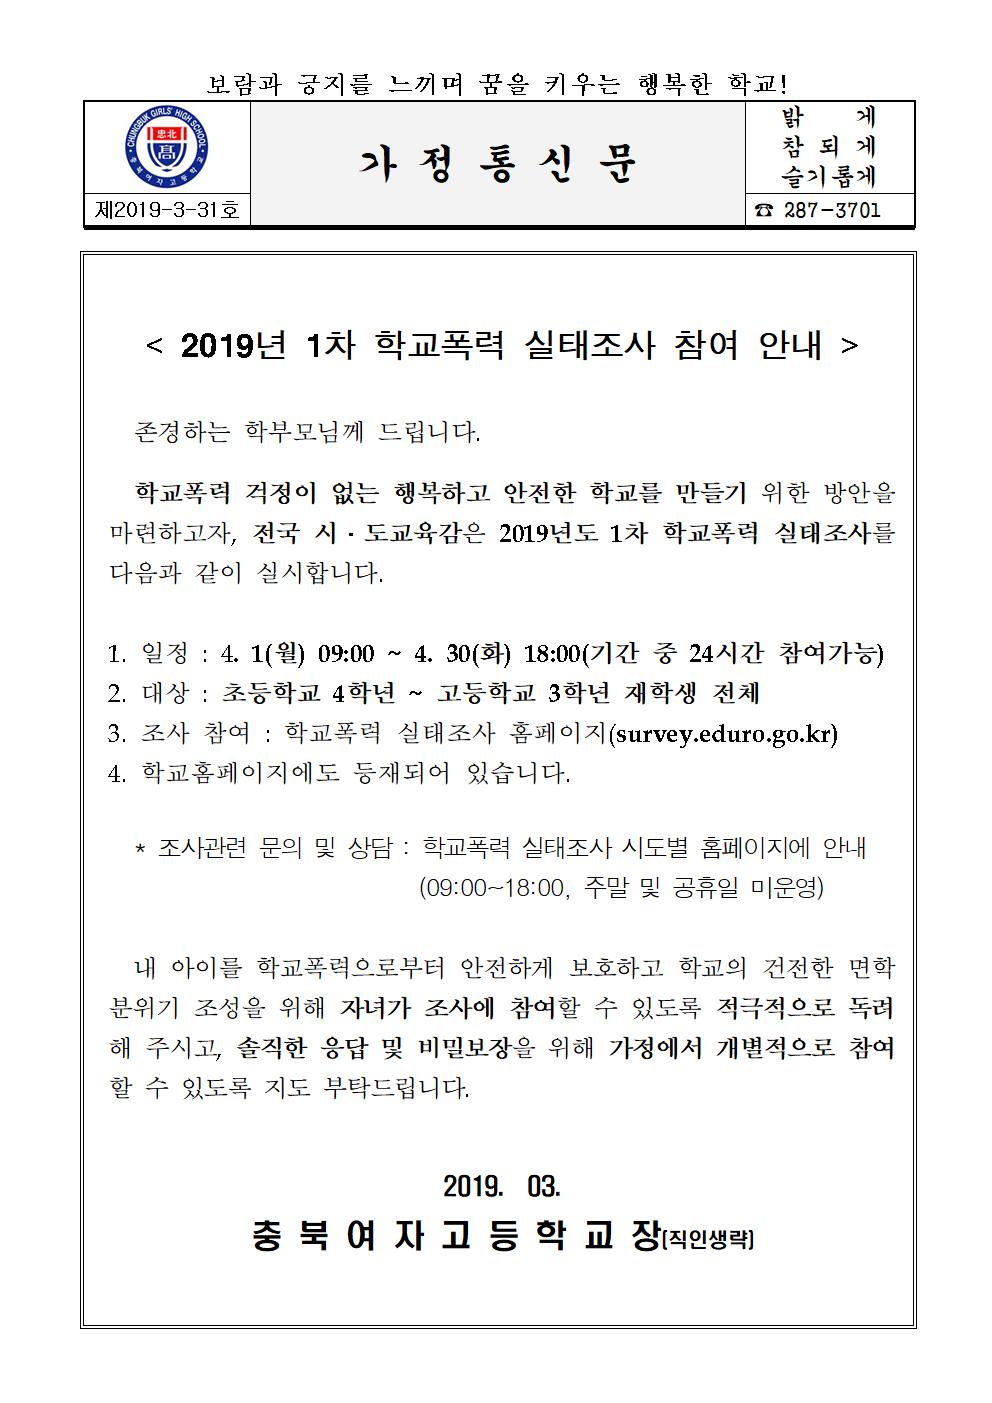 2019년 1차 학교폭력 실태조사 참여 안내문001